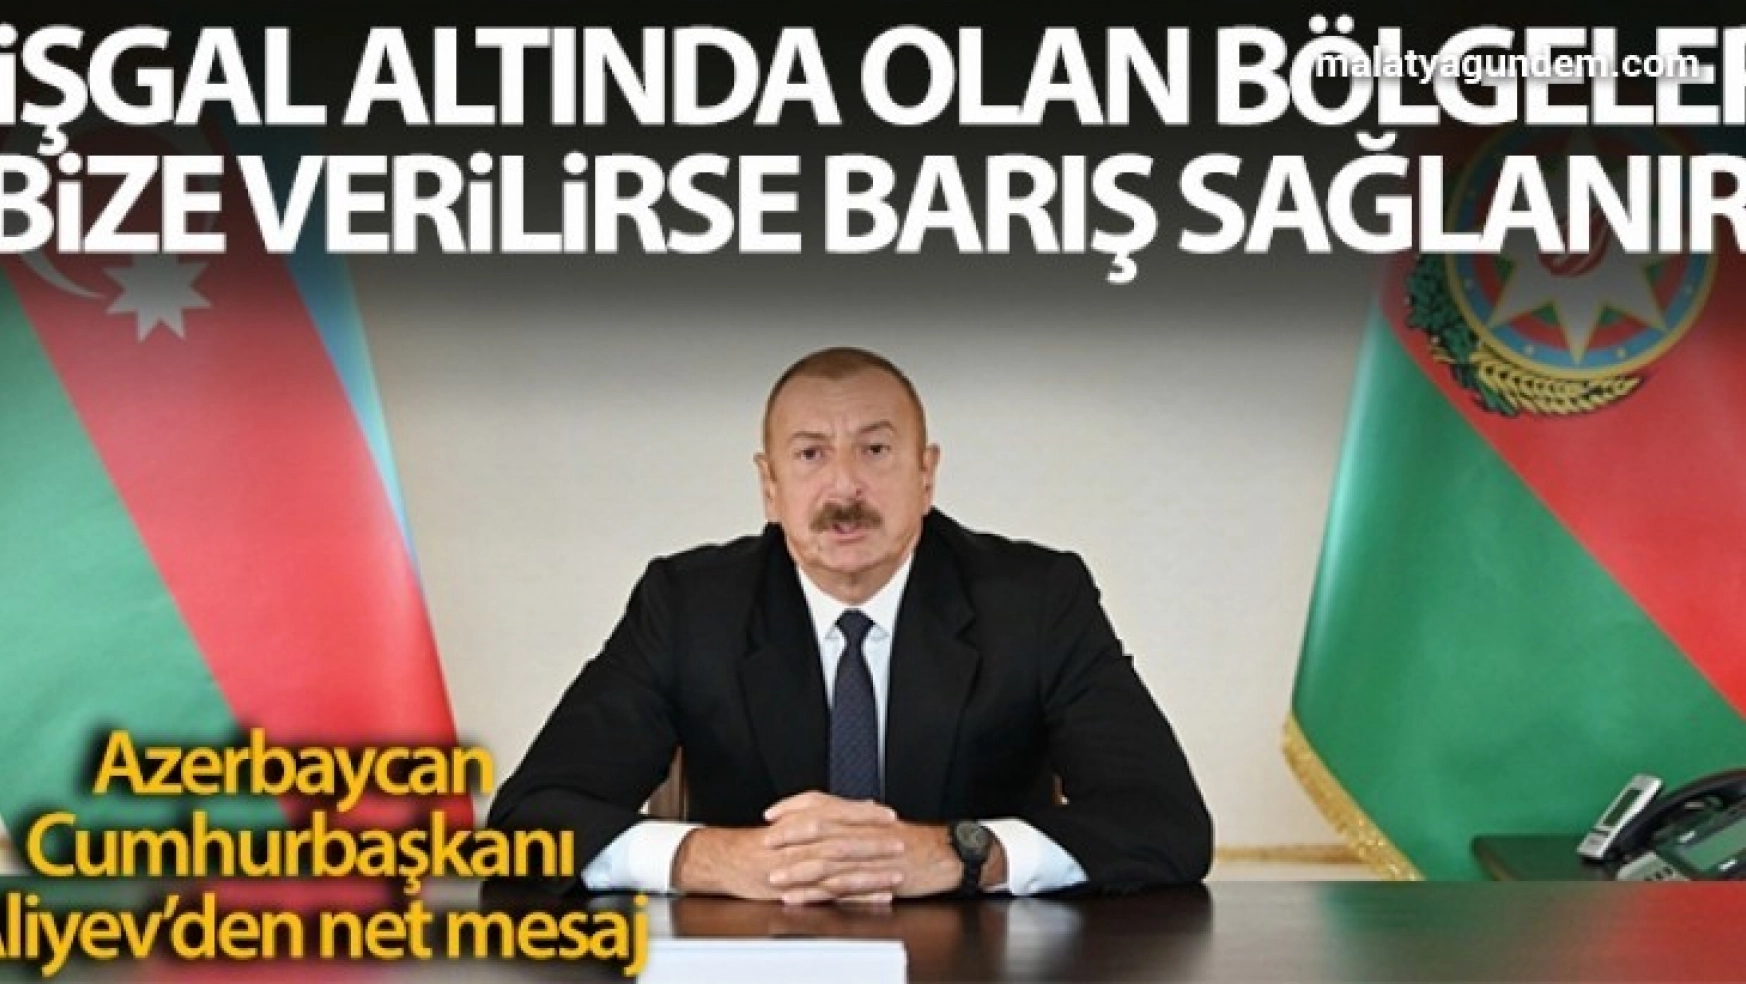 Azerbaycan Cumhurbaşkanı İlham Aliyev: 'İşgal altında olan bölgeler bize verilirse barış sağlanır'